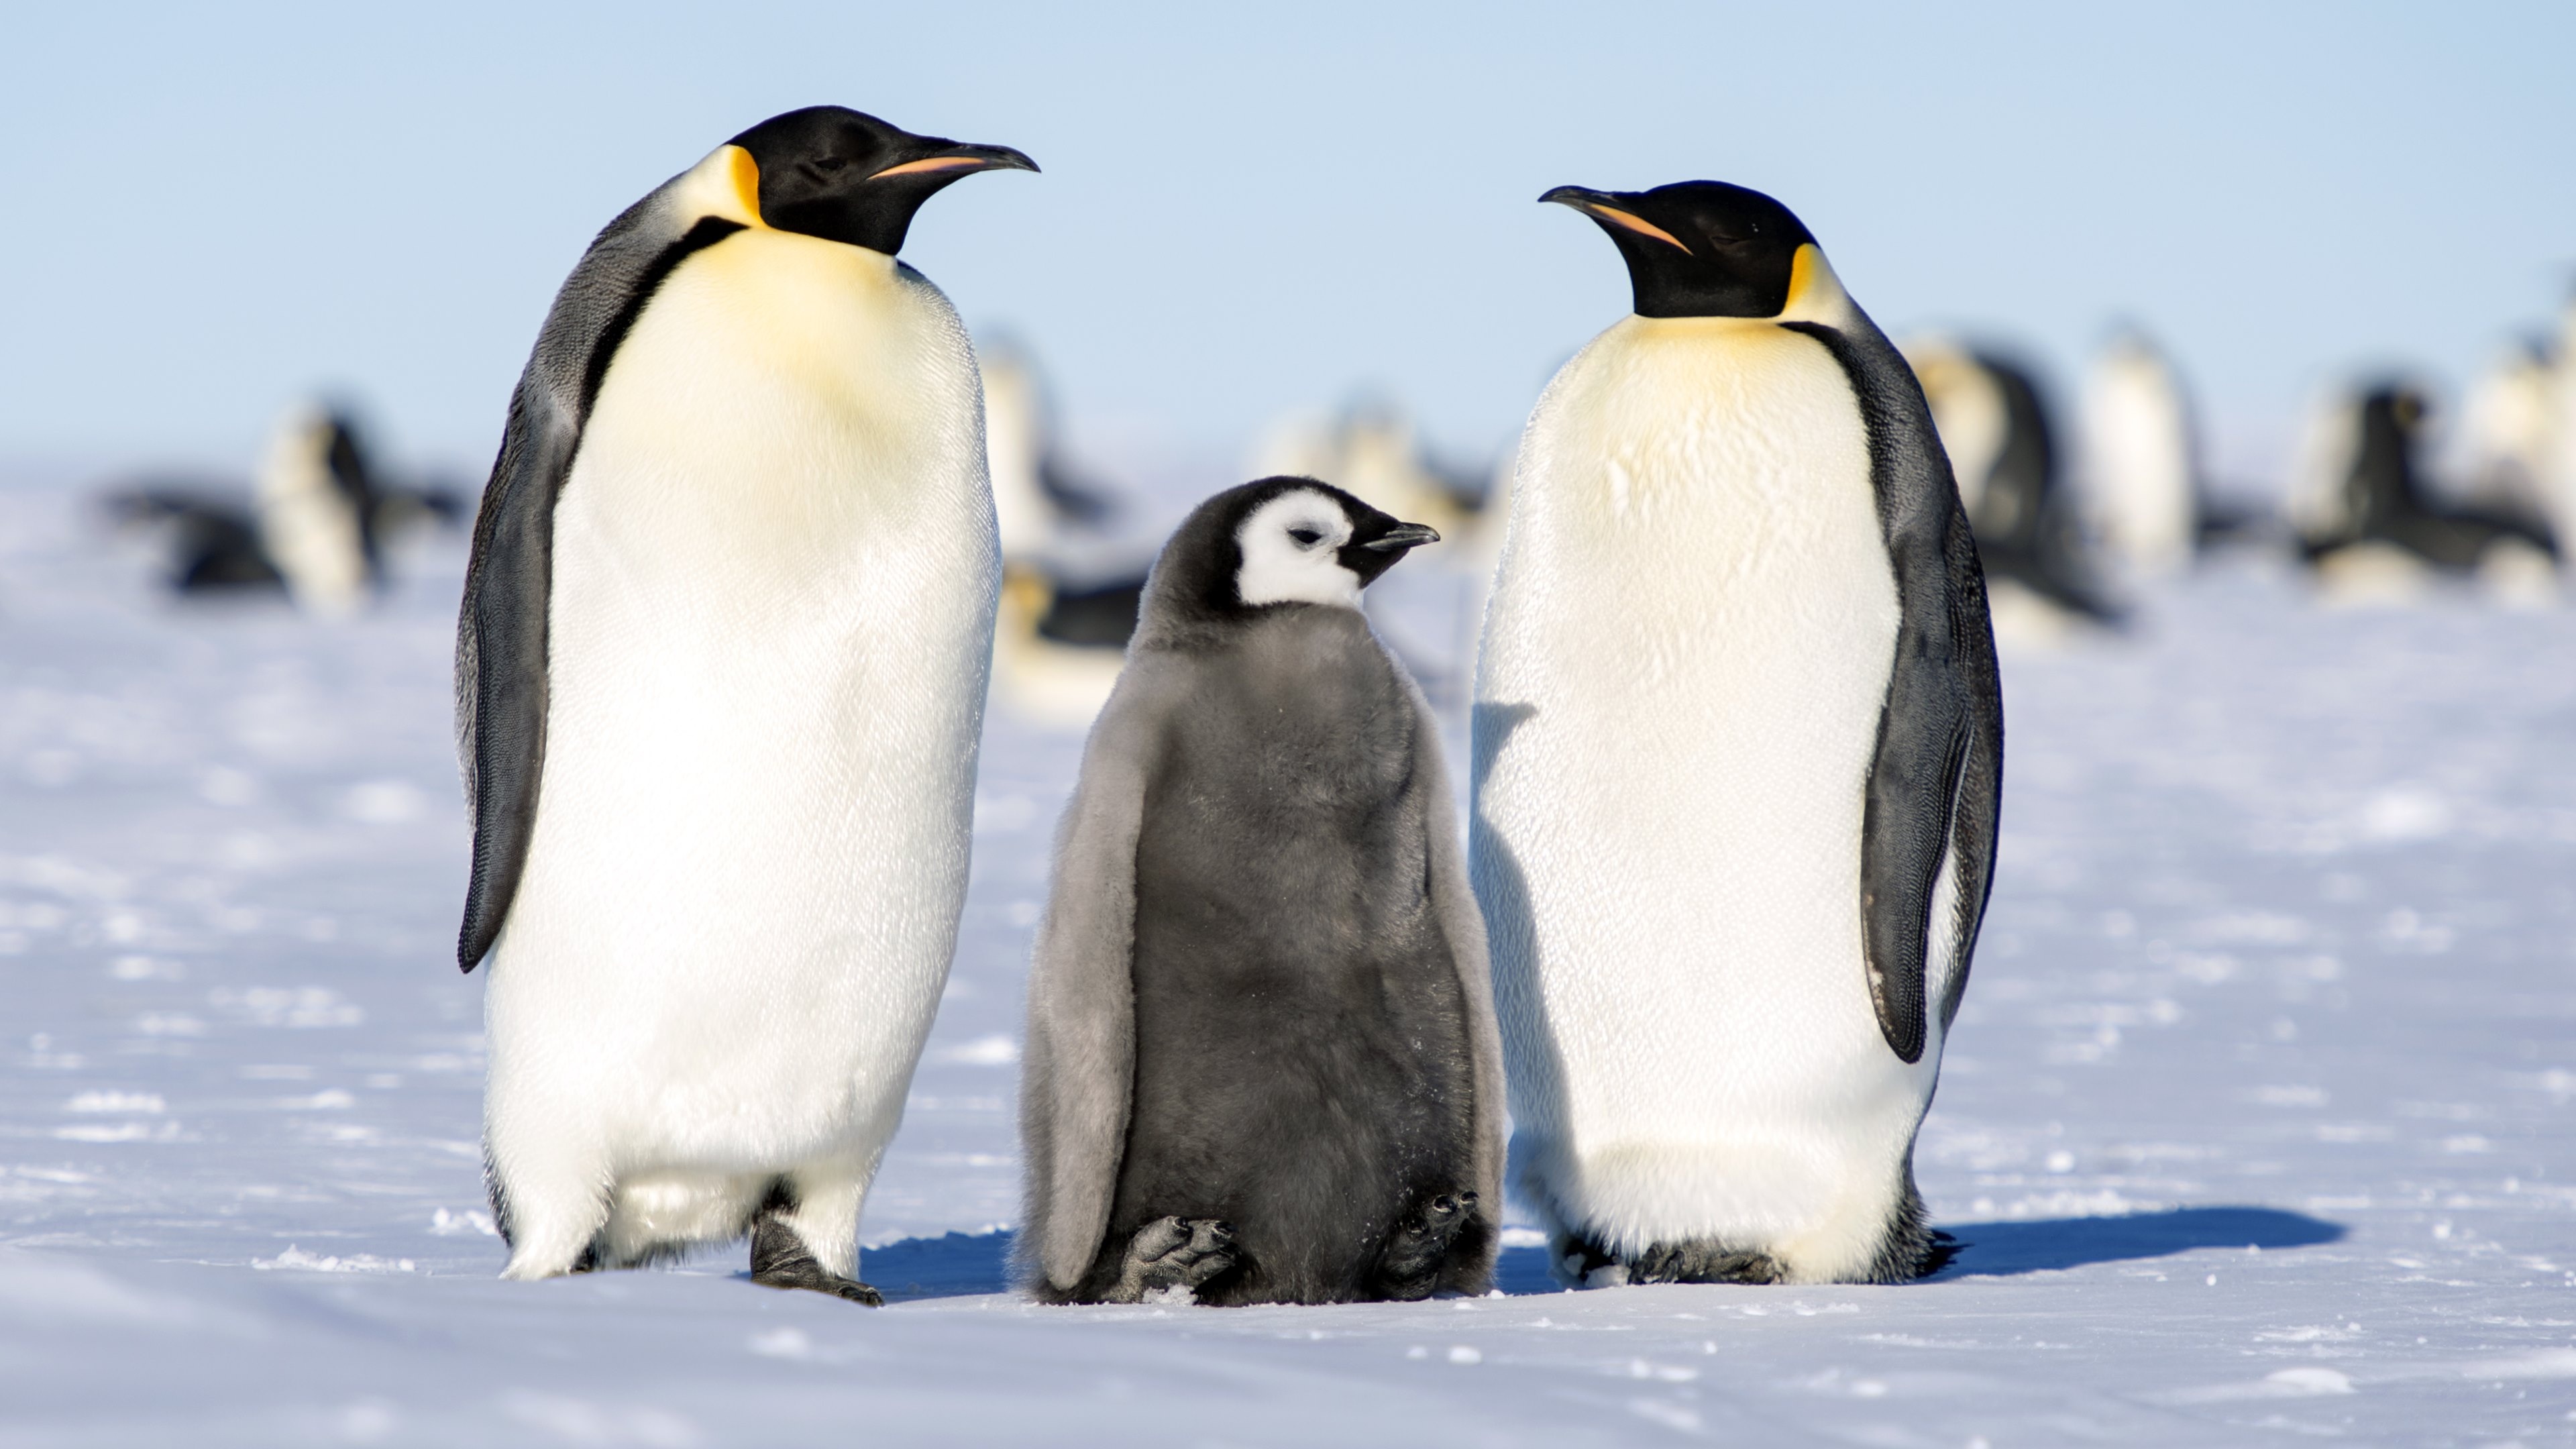 Emperor penguin family, Ultra HD 4K wallpaper, Icebound beauty, Antarctic wildlife, 3840x2160 4K Desktop